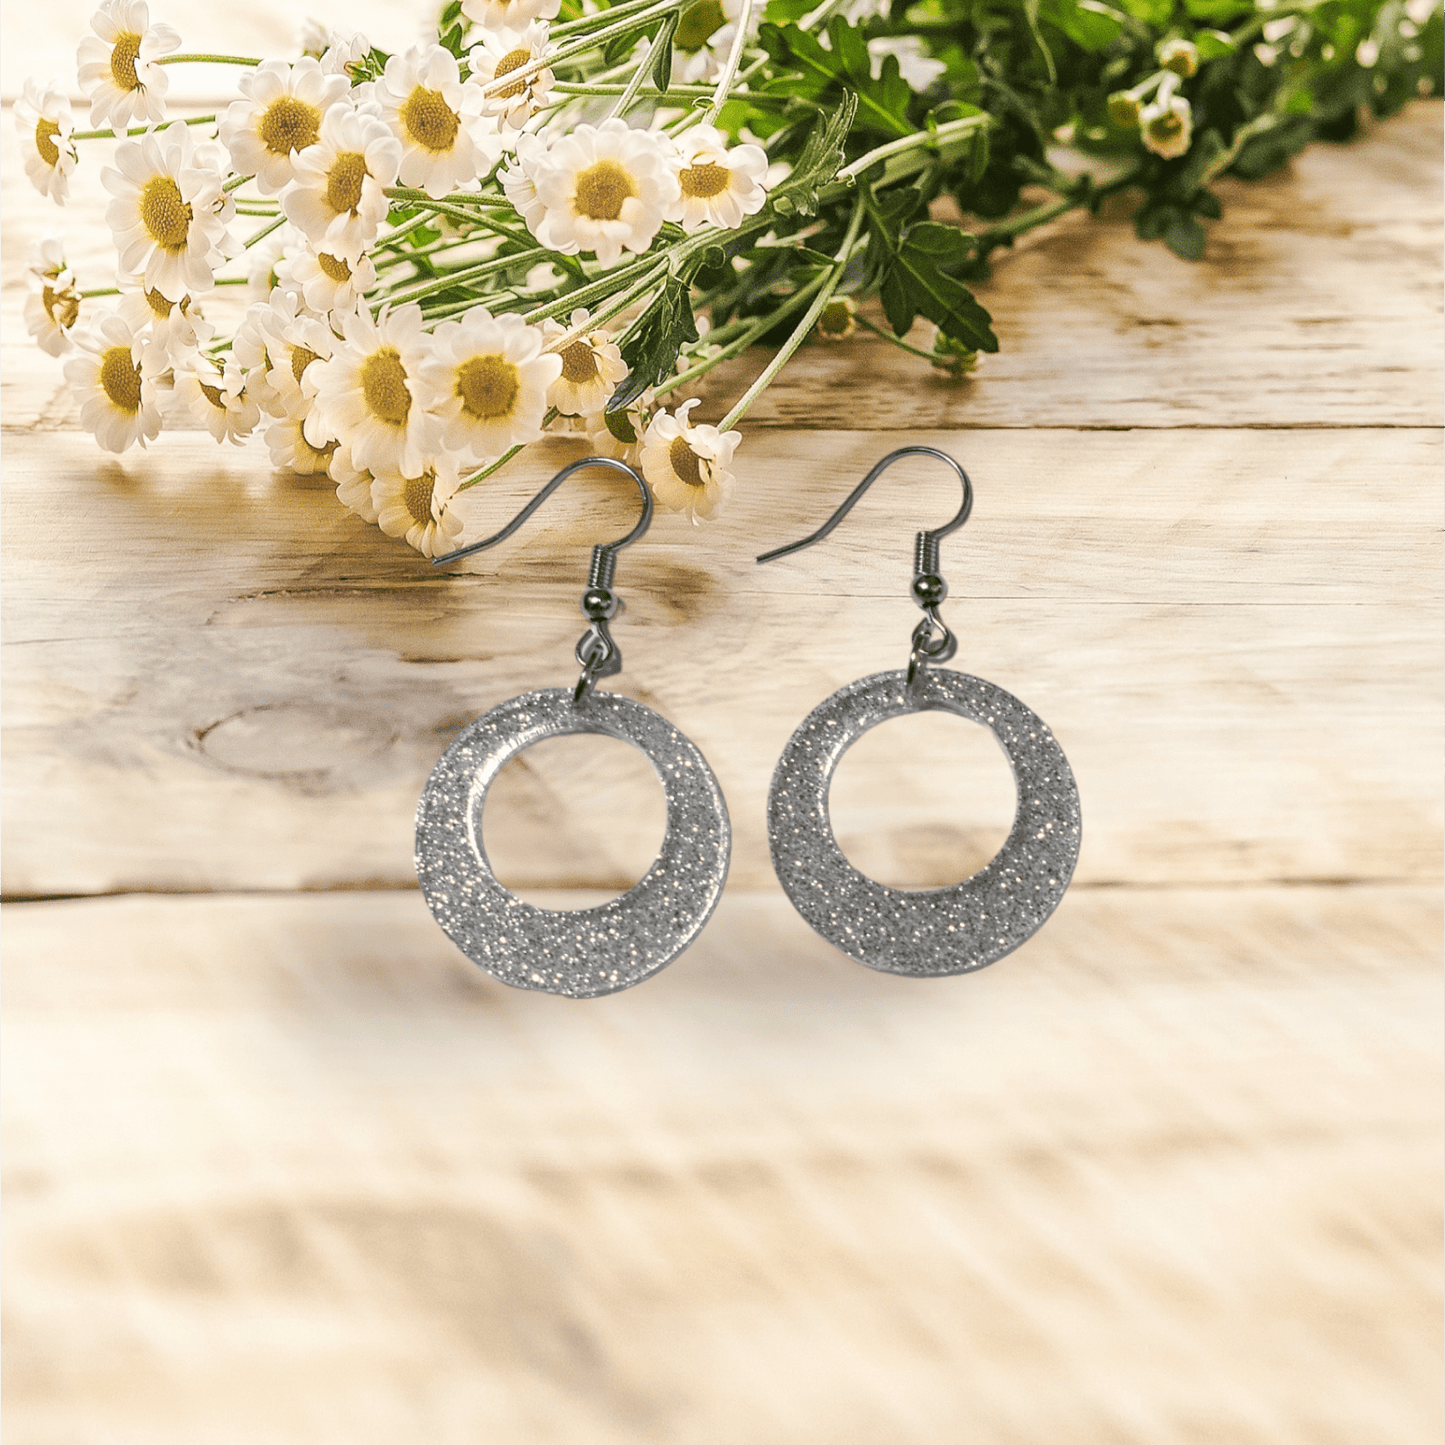 Earrings - silver shimmer hoops - Creative Designs By Kari